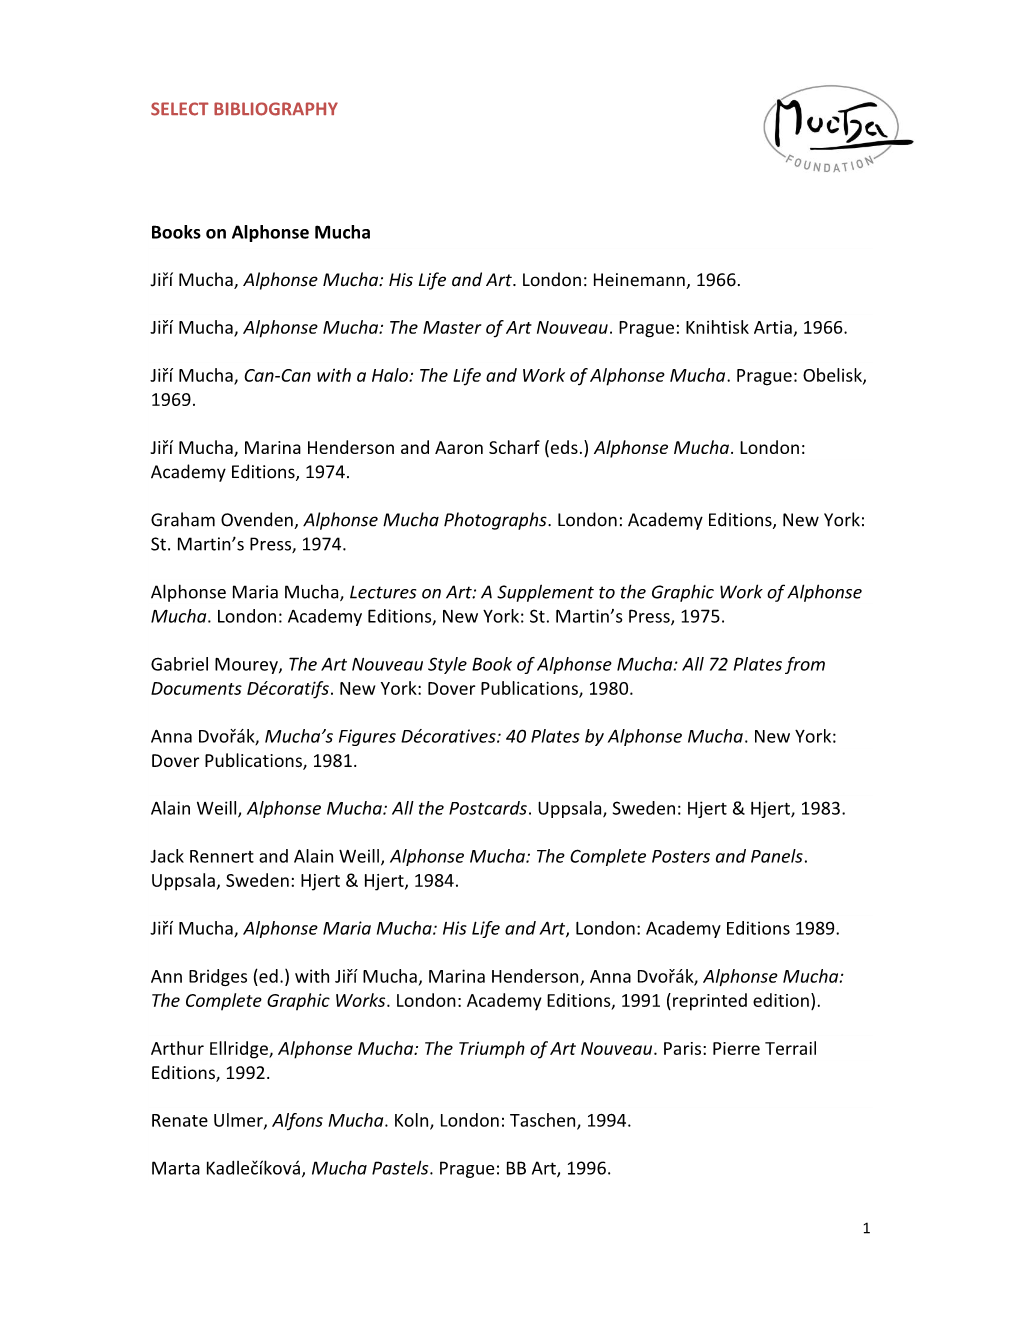 Alphonse Mucha: Selected Bibliography